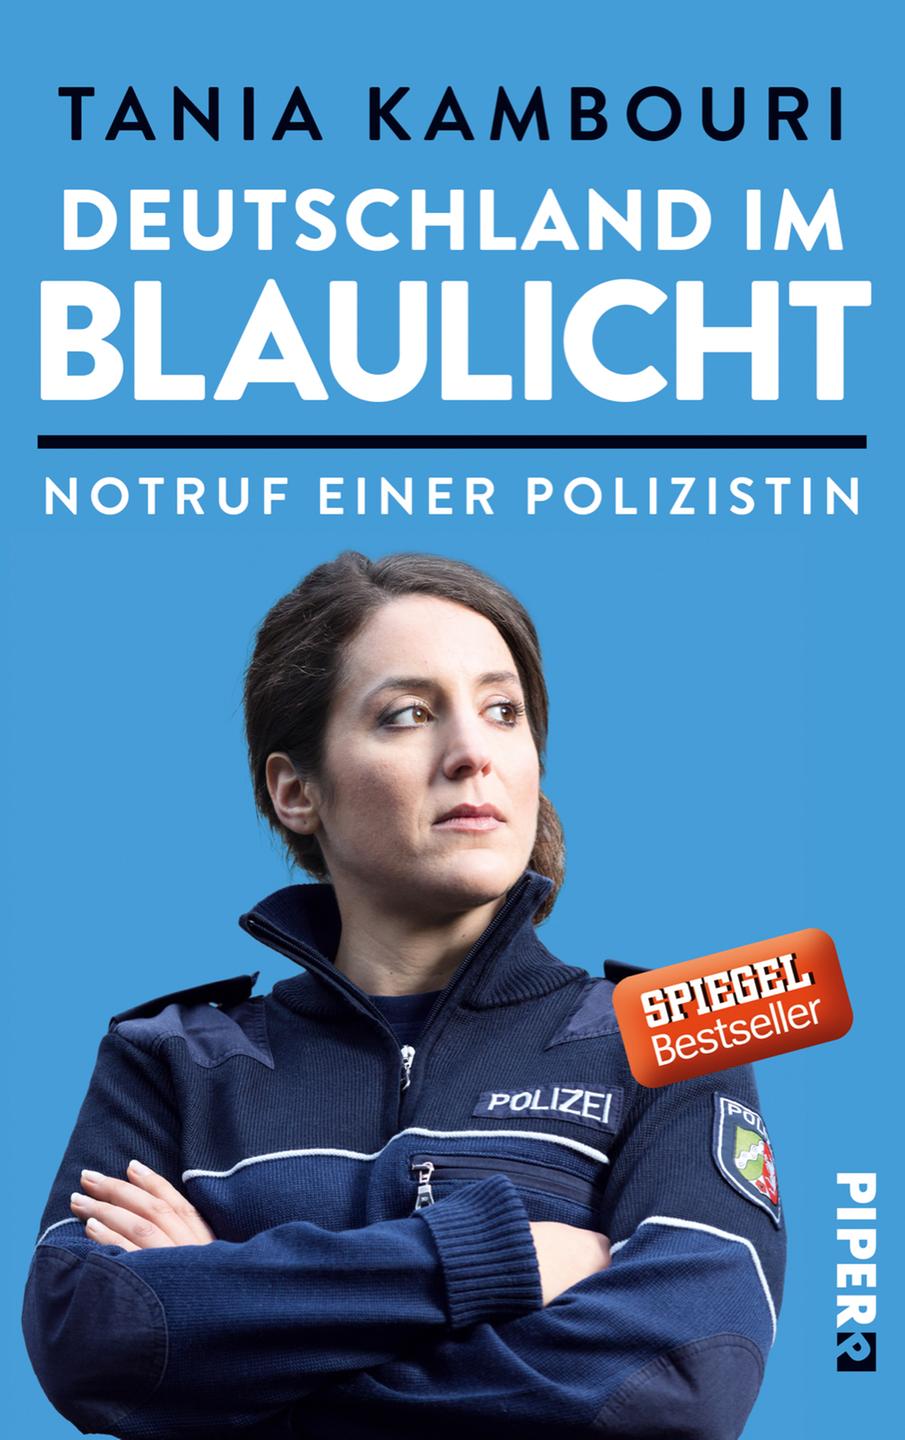 Cover - Tania Kambouri: "Deutschland im Blaulicht"